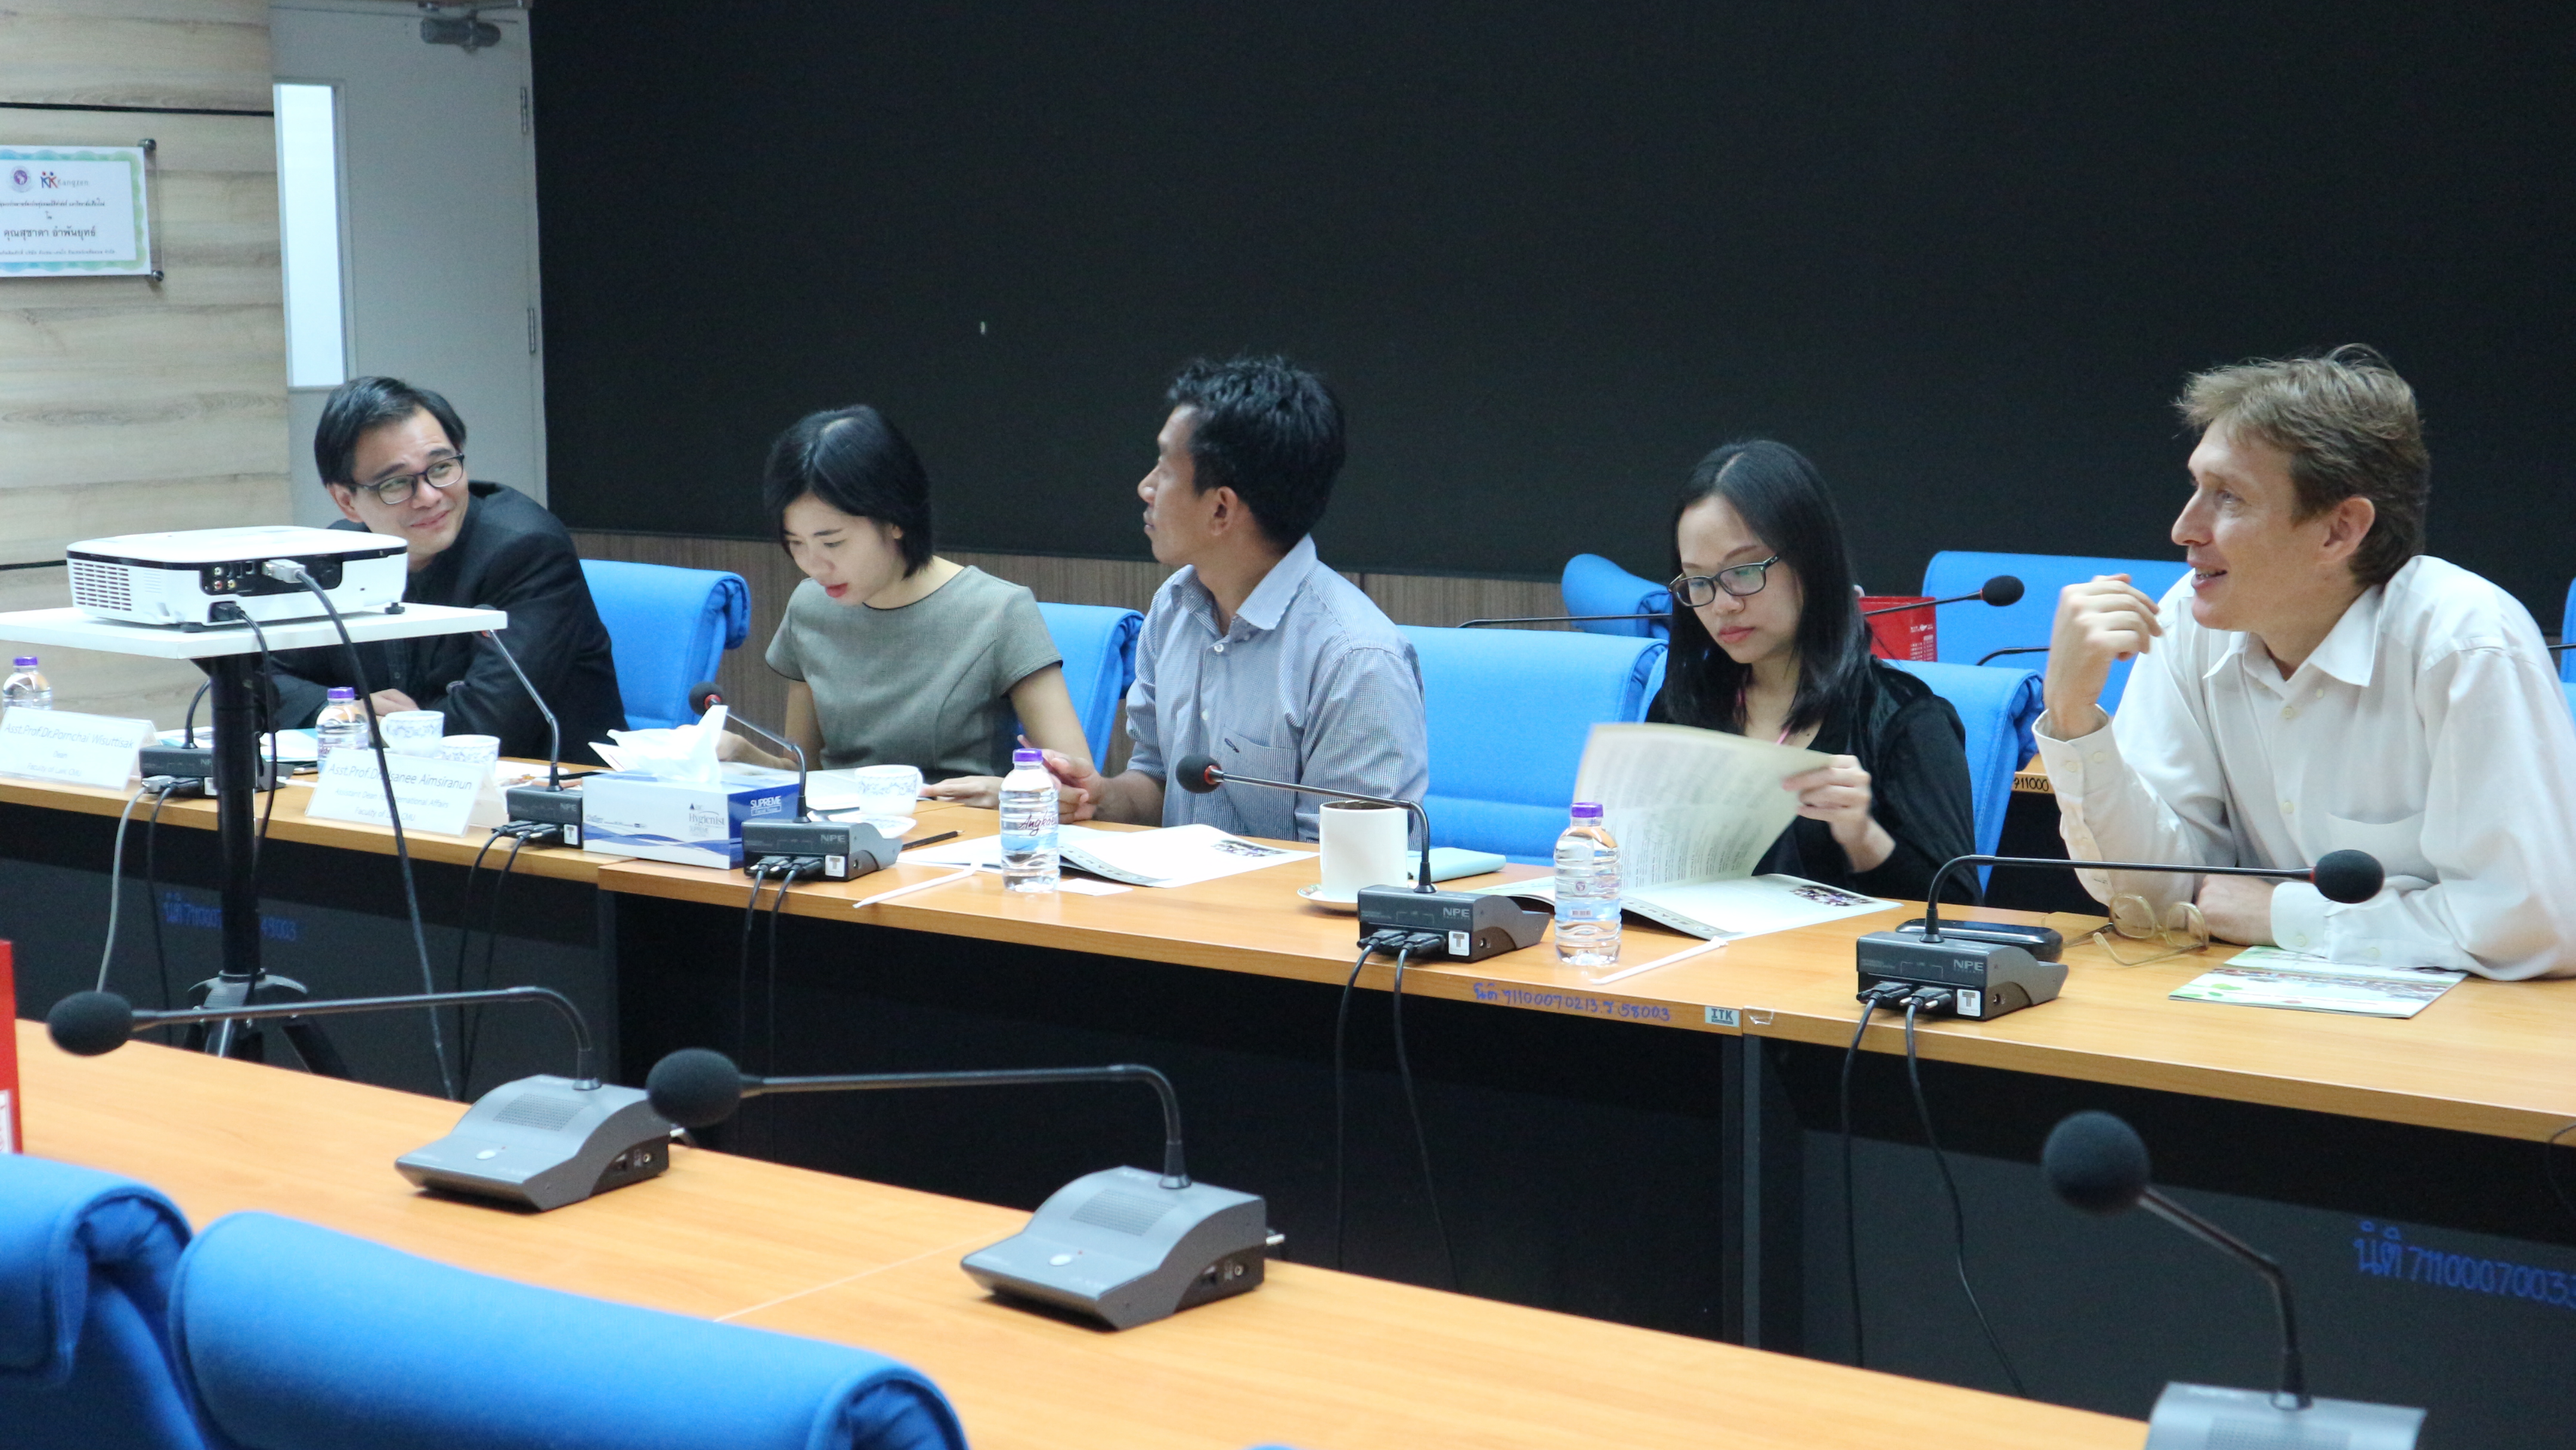 พิธีลงนามบันทึกข้อตกลงความร่วมมือทางวิชาการ ระหว่างคณะนิติศาสตร์ มหาวิทยาลัยเชียงใหม่ และ College of Social Sciences, National Cheng Kung University (